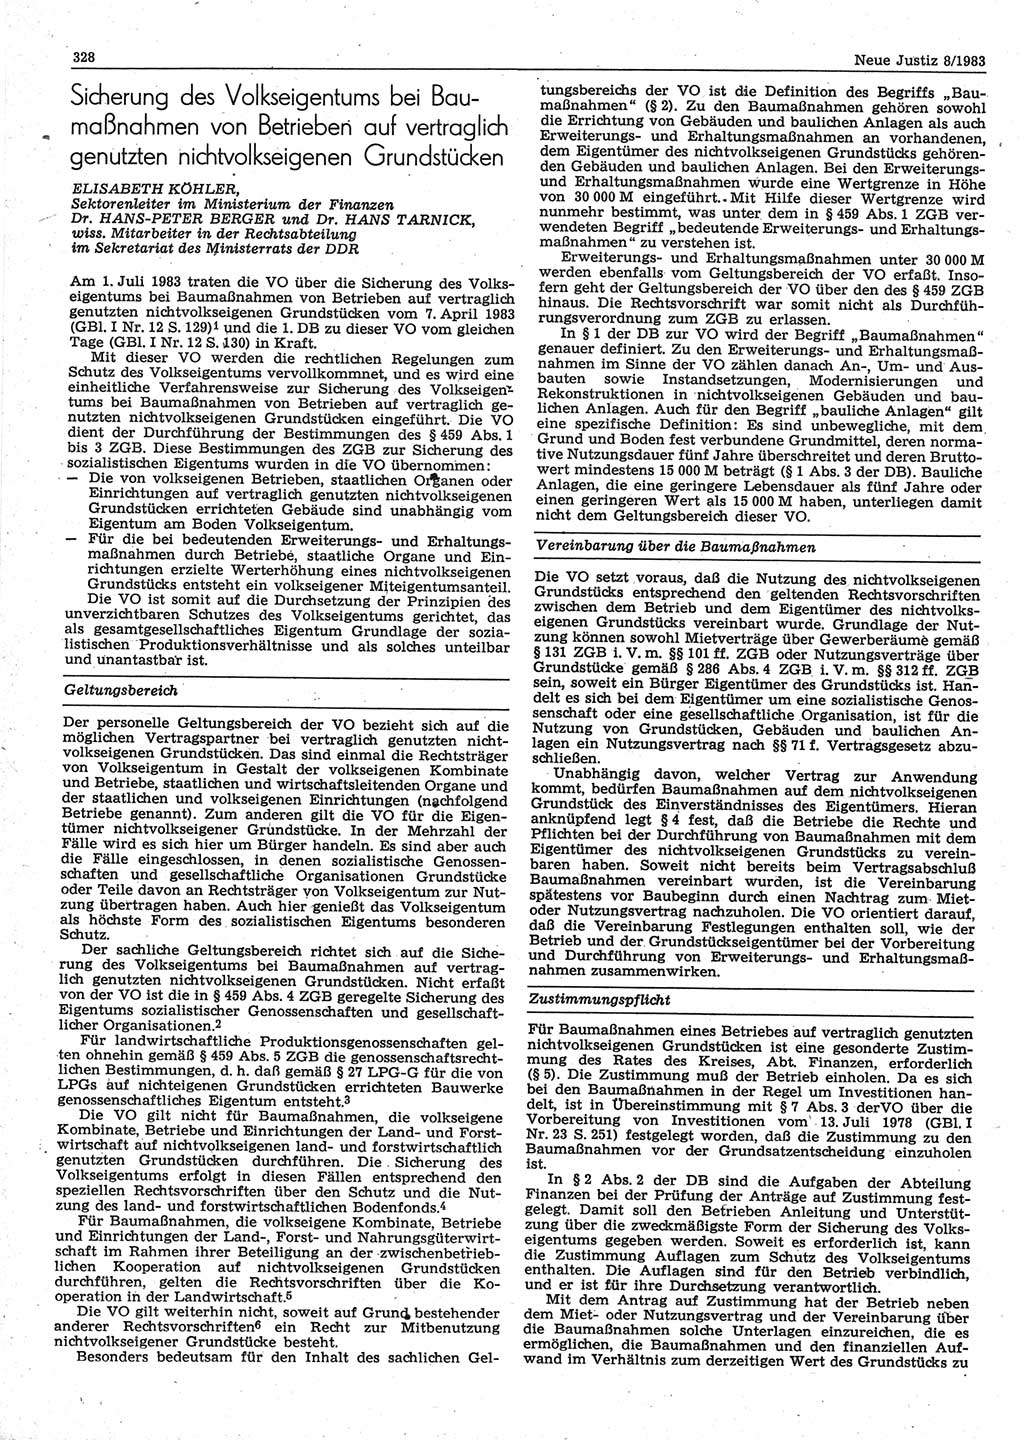 Neue Justiz (NJ), Zeitschrift für sozialistisches Recht und Gesetzlichkeit [Deutsche Demokratische Republik (DDR)], 37. Jahrgang 1983, Seite 328 (NJ DDR 1983, S. 328)